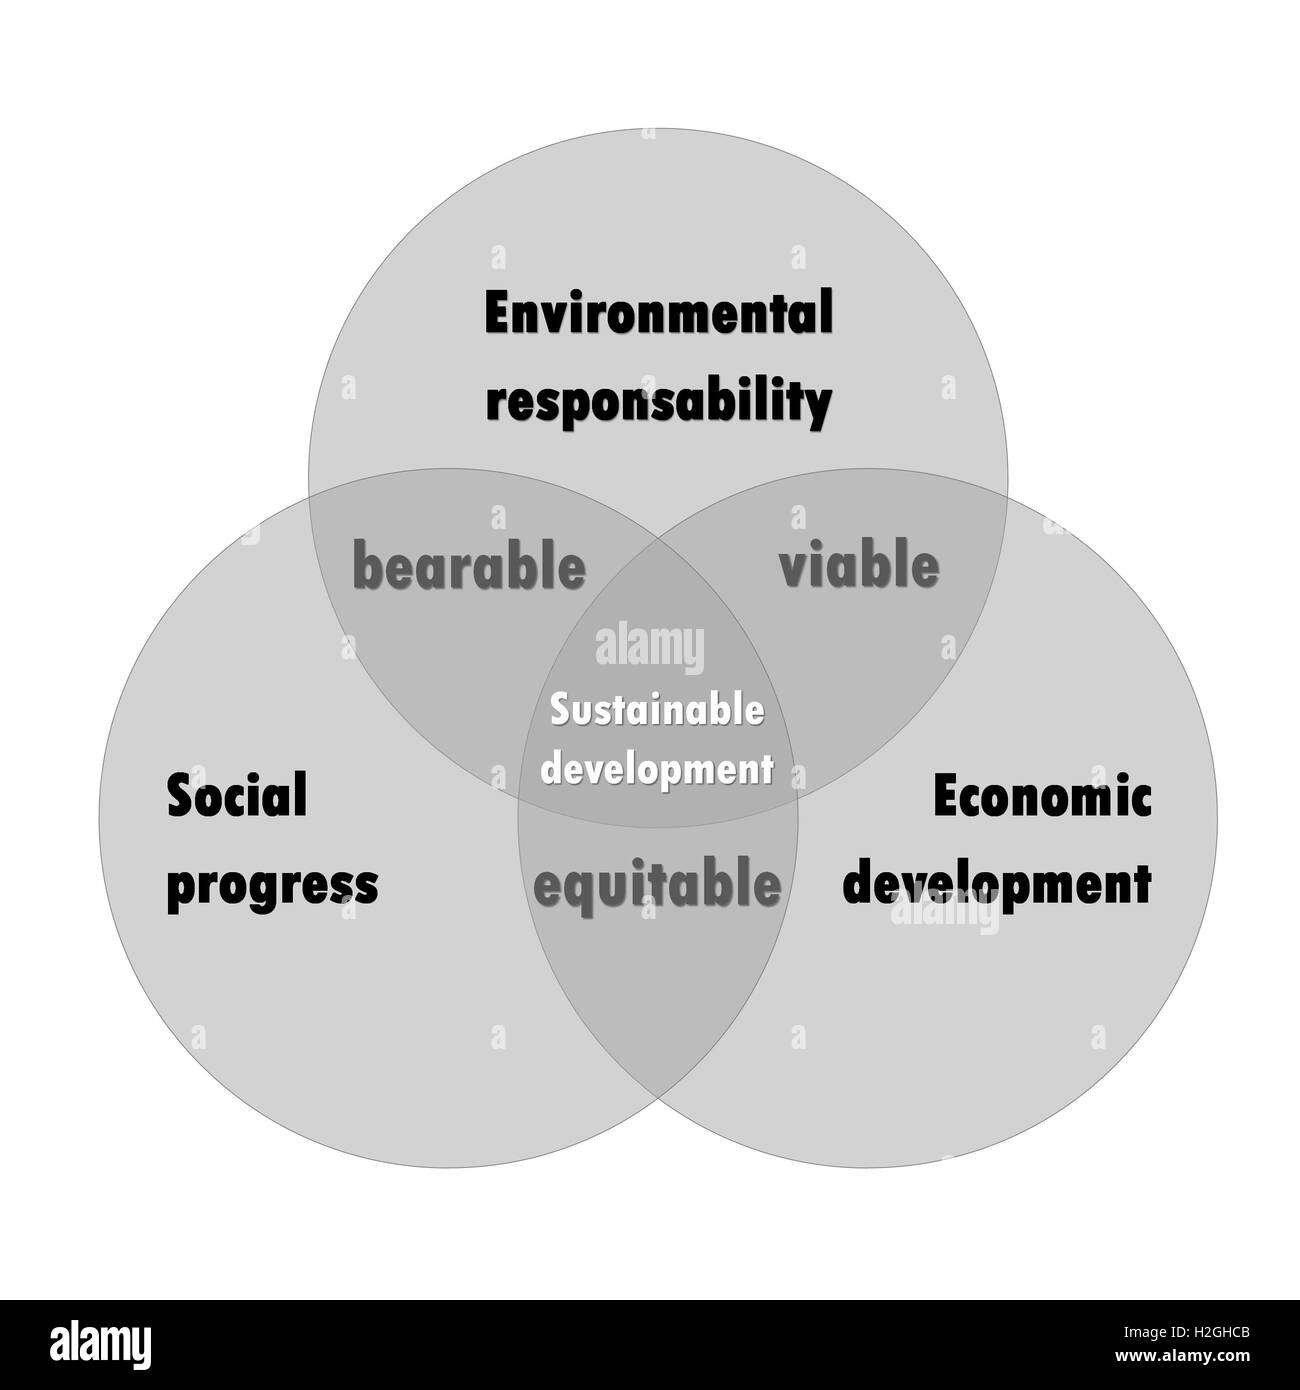 Sustainable development diagram Stock Photo